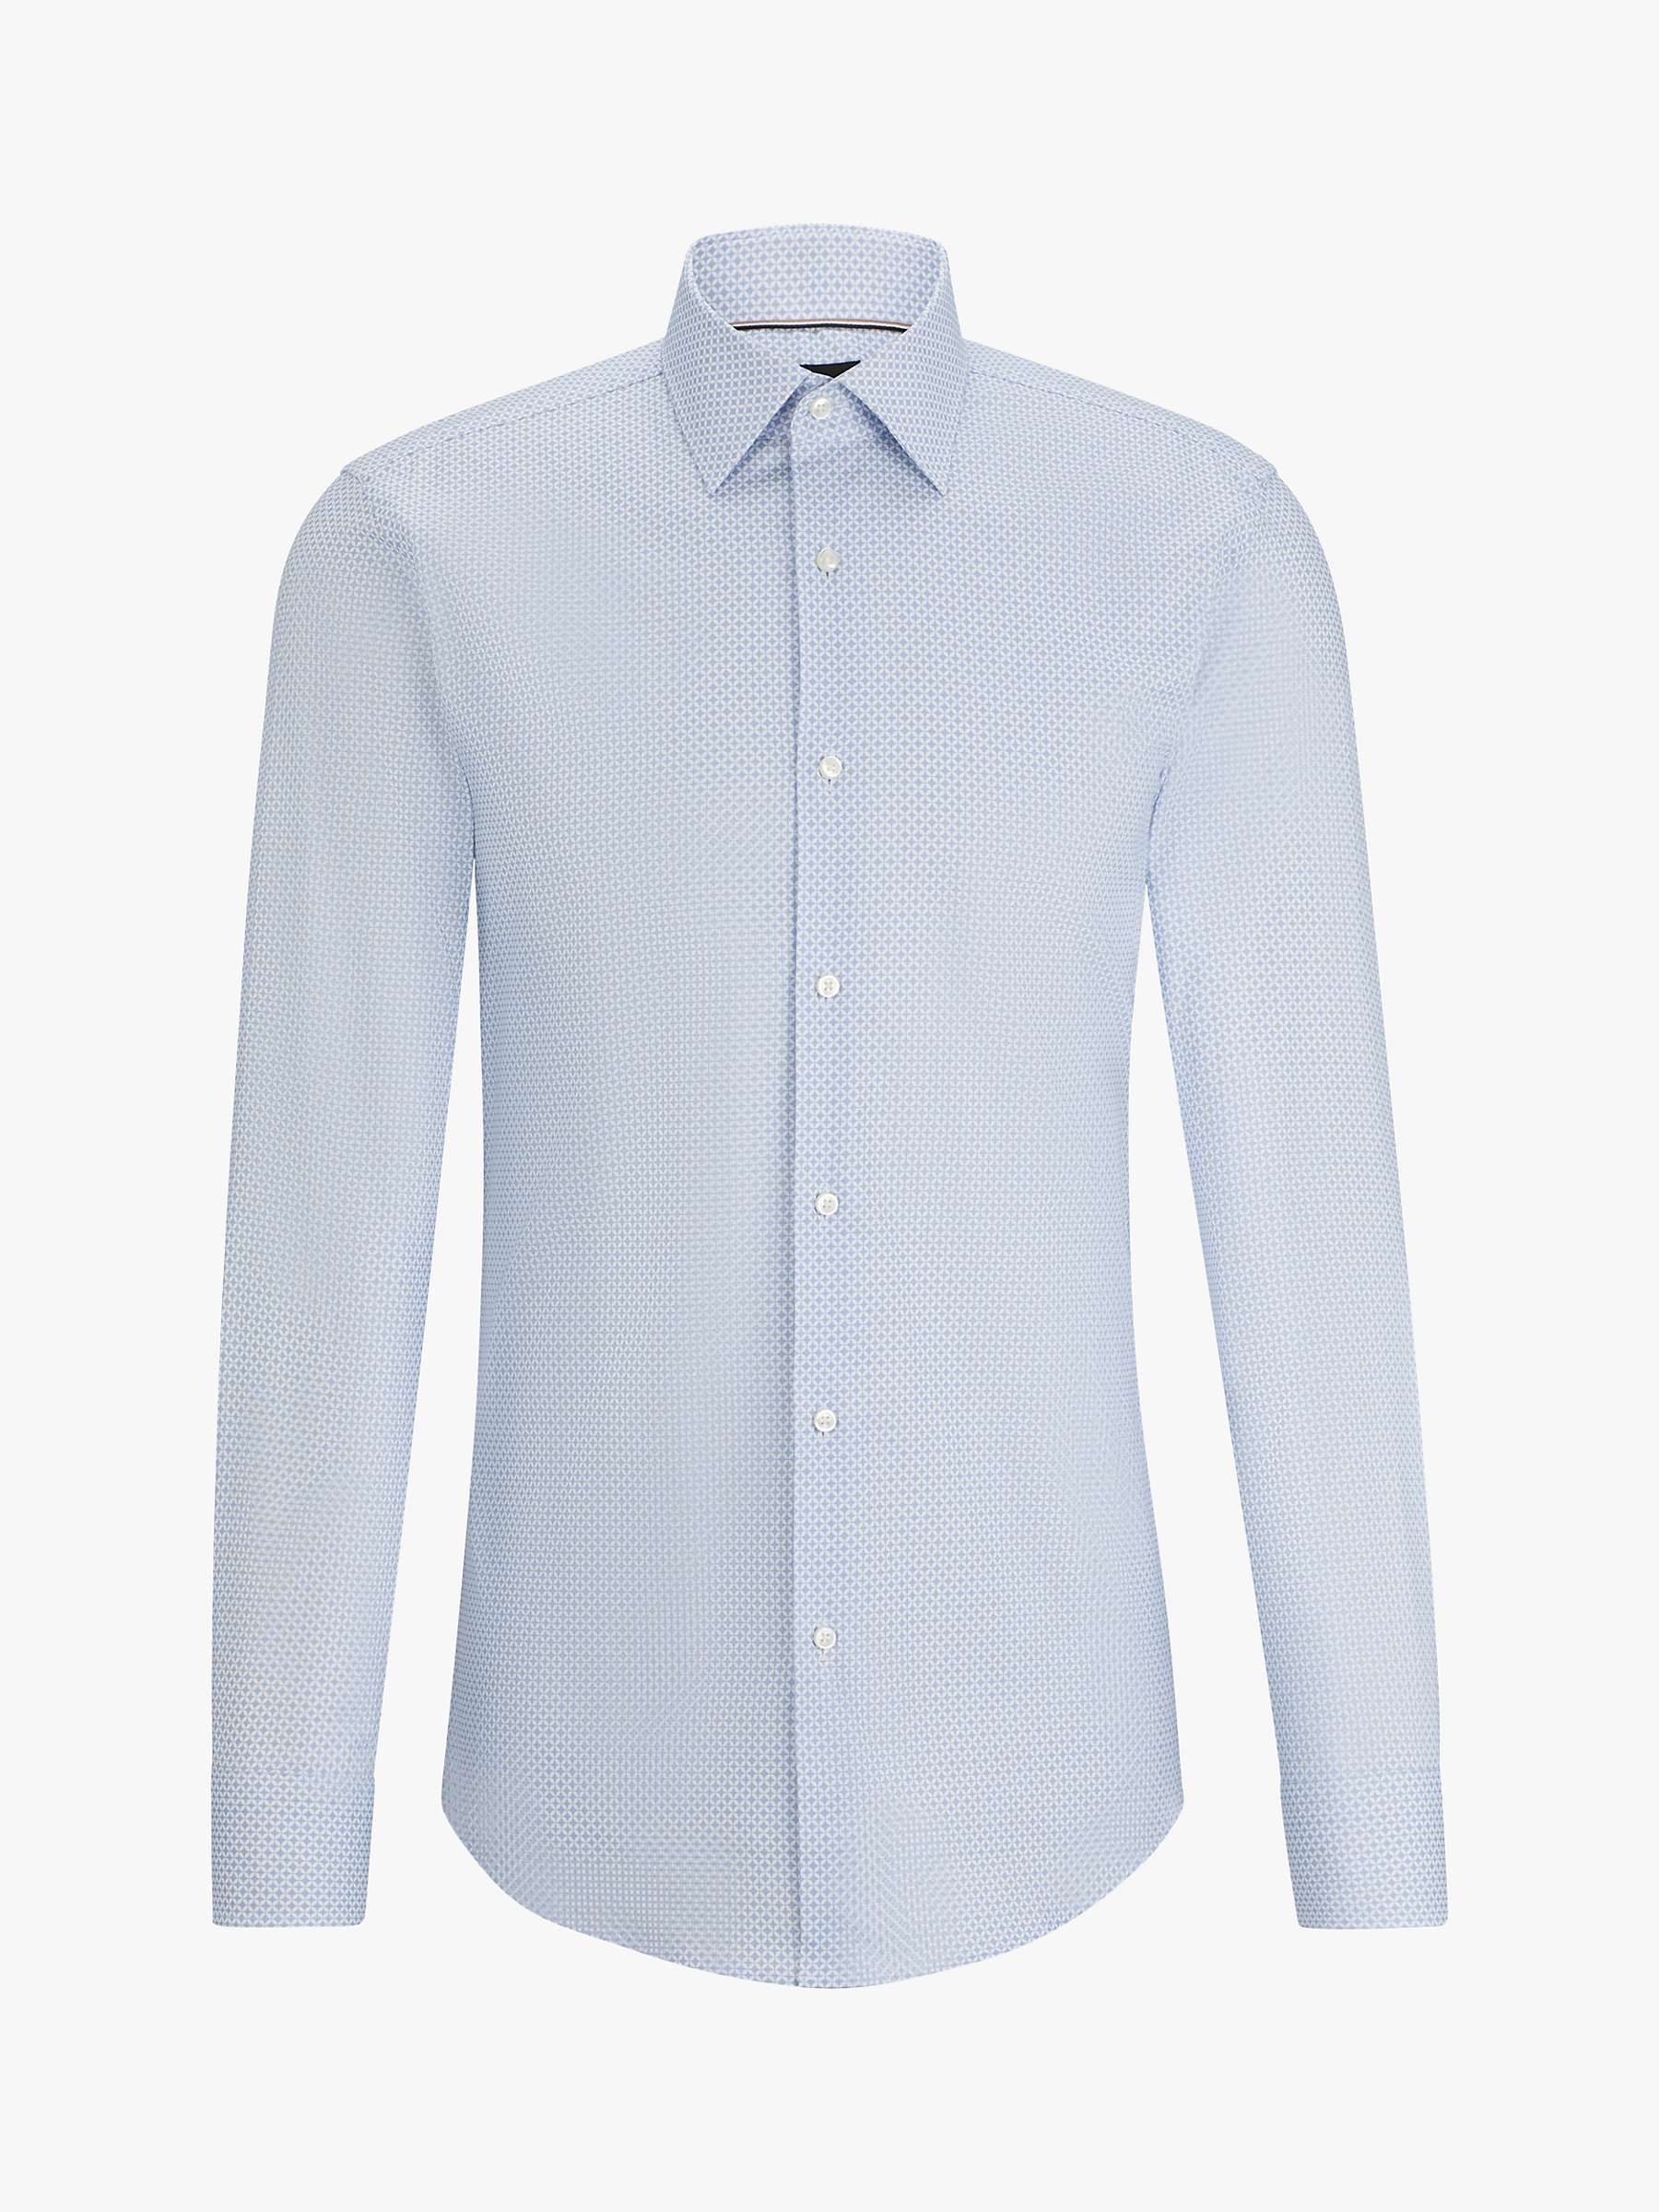 Buy BOSS H-Hank Kent Long Sleeve Shirt, Light/Pastel Blue Online at johnlewis.com